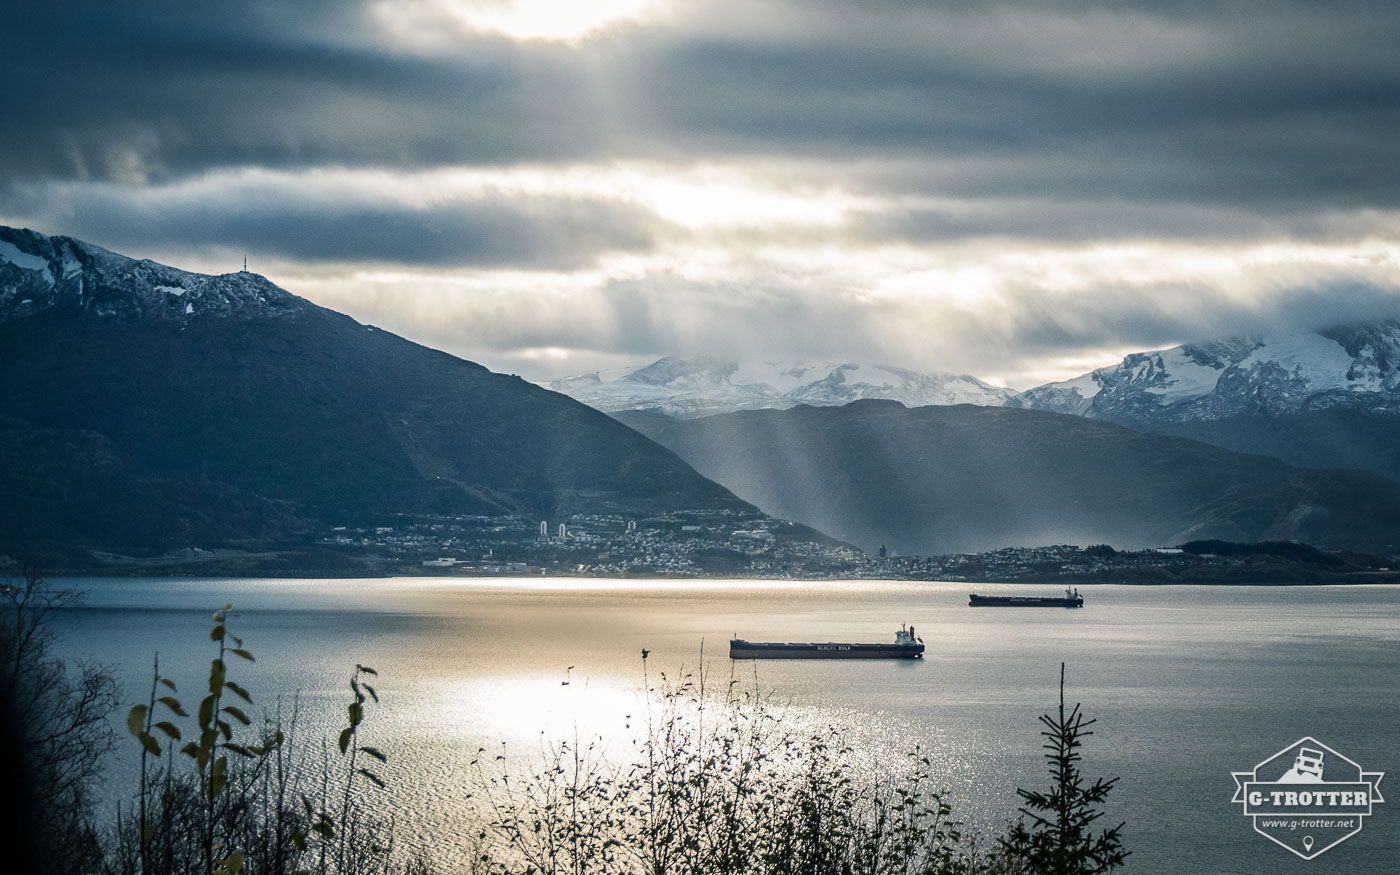 Bild 18 der Bildergalerie “4700 km durch Norwegen”